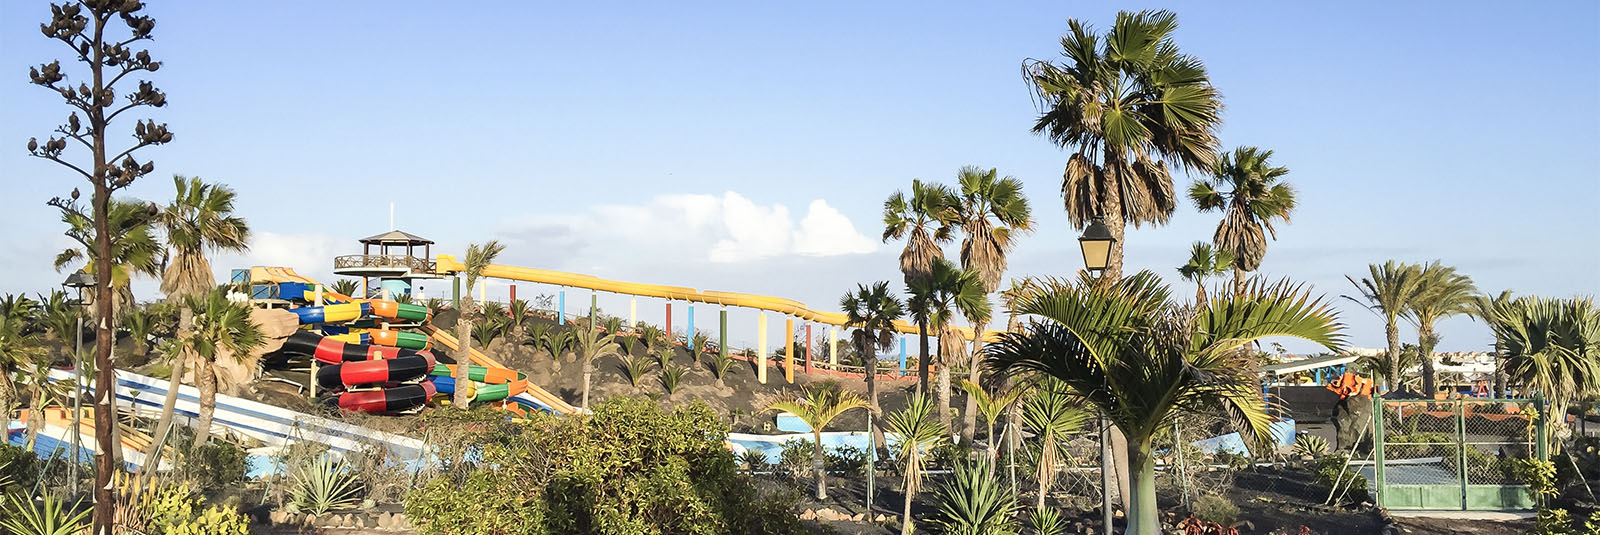 Sehenswürdigkeiten Fuerteventuras: Corralejo – Acua Water Park.